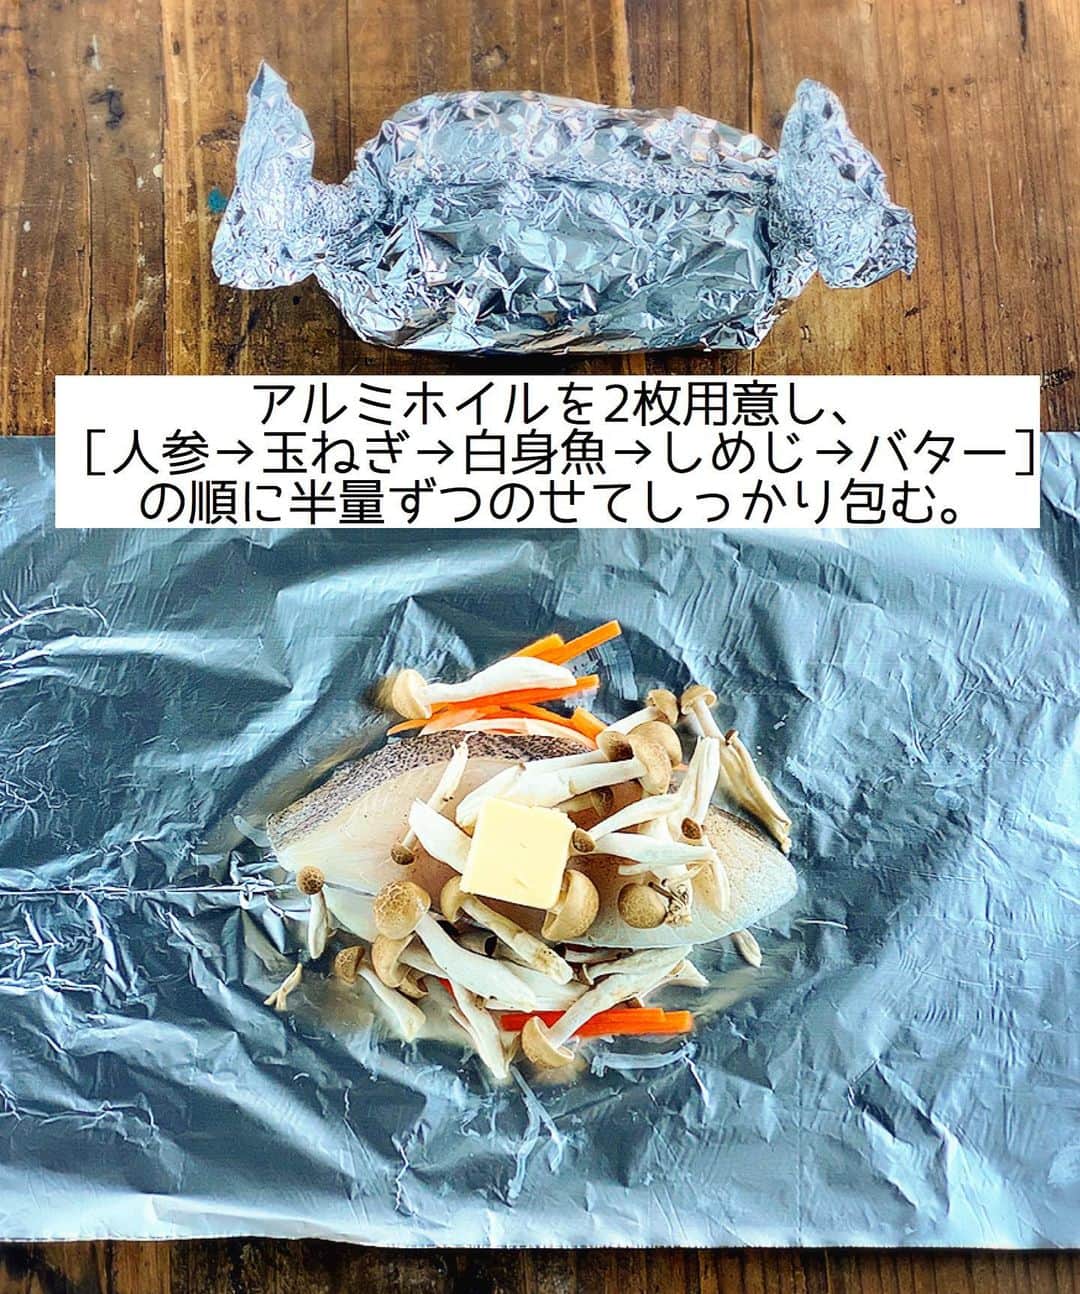 Mizuki【料理ブロガー・簡単レシピ】さんのインスタグラム写真 - (Mizuki【料理ブロガー・簡単レシピ】Instagram)「・﻿ 【レシピ】ーーーーーーーーー﻿ 白身魚ときのこのホイル焼き﻿ ーーーーーーーーーーーーーー﻿ ﻿ ﻿ ﻿ こんにちはー(*^^*)﻿  ﻿ 今日は［えごま油］を使ったレシピ﻿ 第2弾のご紹介です♩﻿  ﻿ 今回も使用したのは﻿ えごま油売上No.1の#朝日えごま油　﻿ 朝日えごま油は国内製造で無添加、﻿ しかも癖が無くて使い易いんですよ〜☆﻿ しかも［オメガ3］がたっぷり入っているので﻿ 美容や健康効果も期待できます♡♡﻿  ﻿ ﻿ さて、今回のレシピは﻿ ［白身魚ときのこのホイル焼き］です♩﻿ えごま油は味噌だれに加えて﻿ 仕上げにかけるだけですよ〜(*´艸`)﻿ フライパンで簡単にできるので﻿ よかったらお試し下さいね(*^^*)﻿  ﻿  ﻿  ﻿ ーーーーーーーーーーーーーーーーー﻿ 【2人分】﻿ 白身魚(たらやカレイなど)...2切れ﻿ しめじ...1/2袋﻿ 人参...1/3本﻿ 玉ねぎ...1/8個﻿ 塩こしょう...少々﻿ バター...10g﻿ ●味噌...大1﻿ ●えごま油...大‪1/2‬﻿ ●砂糖...小1﻿ 万能ねぎ...適量﻿ ﻿ 1.白身魚に塩こしょうを振る。しめじは小房に分ける。人参は千切りにする。玉ねぎは薄切りにする。﻿ 2.アルミホイル(30cm長さ)を2枚用意し、それぞれに［人参→玉ねぎ→白身魚→しめじ→バター］の順に半量ずつのせてしっかり包む。﻿ 3.フライパンに2を並べ、1cm高さまで水を注いで中火にかける。蓋をして12〜13分蒸し焼きにする。﻿ 4.仕上げに●を混ぜた味噌だれをかける。﻿ ーーーーーーーーーーーーーーーー﻿  ﻿  ﻿ ﻿ 《ポイント》﻿ ♦︎味噌だれはよく混ぜ、好みの量をかけてお召し上がり下さい♩﻿  ﻿  ﻿ ﻿ ﻿ ﻿ ﻿ えごま油は熱に弱いから﻿ 加熱しないでいただくのがおすすめですよ〜！﻿ 例えばサラダやお刺身にかけたり﻿ ドレッシングやお味噌汁に加えたり(*^^*)﻿ あと、1日の摂取目安は''ひとり小1杯''です♩﻿ ﻿ ﻿  ﻿  ﻿  ﻿  ﻿ ﻿ #ホイル焼き#魚#フライパン#Mizuki#簡単レシピ#時短レシピ#節約レシピ#料理#レシピ#おうちごはん#料理好きな人と繋がりたい#食べ物#料理記録#おうちごはんlover#写真好きな人と繋がりたい#朝日えごま#朝日えごま油_PR#えごまレシピ#美容レシピ#えごま油活用法#えごま油#えごま#オメガ3」9月17日 12時25分 - mizuki_31cafe